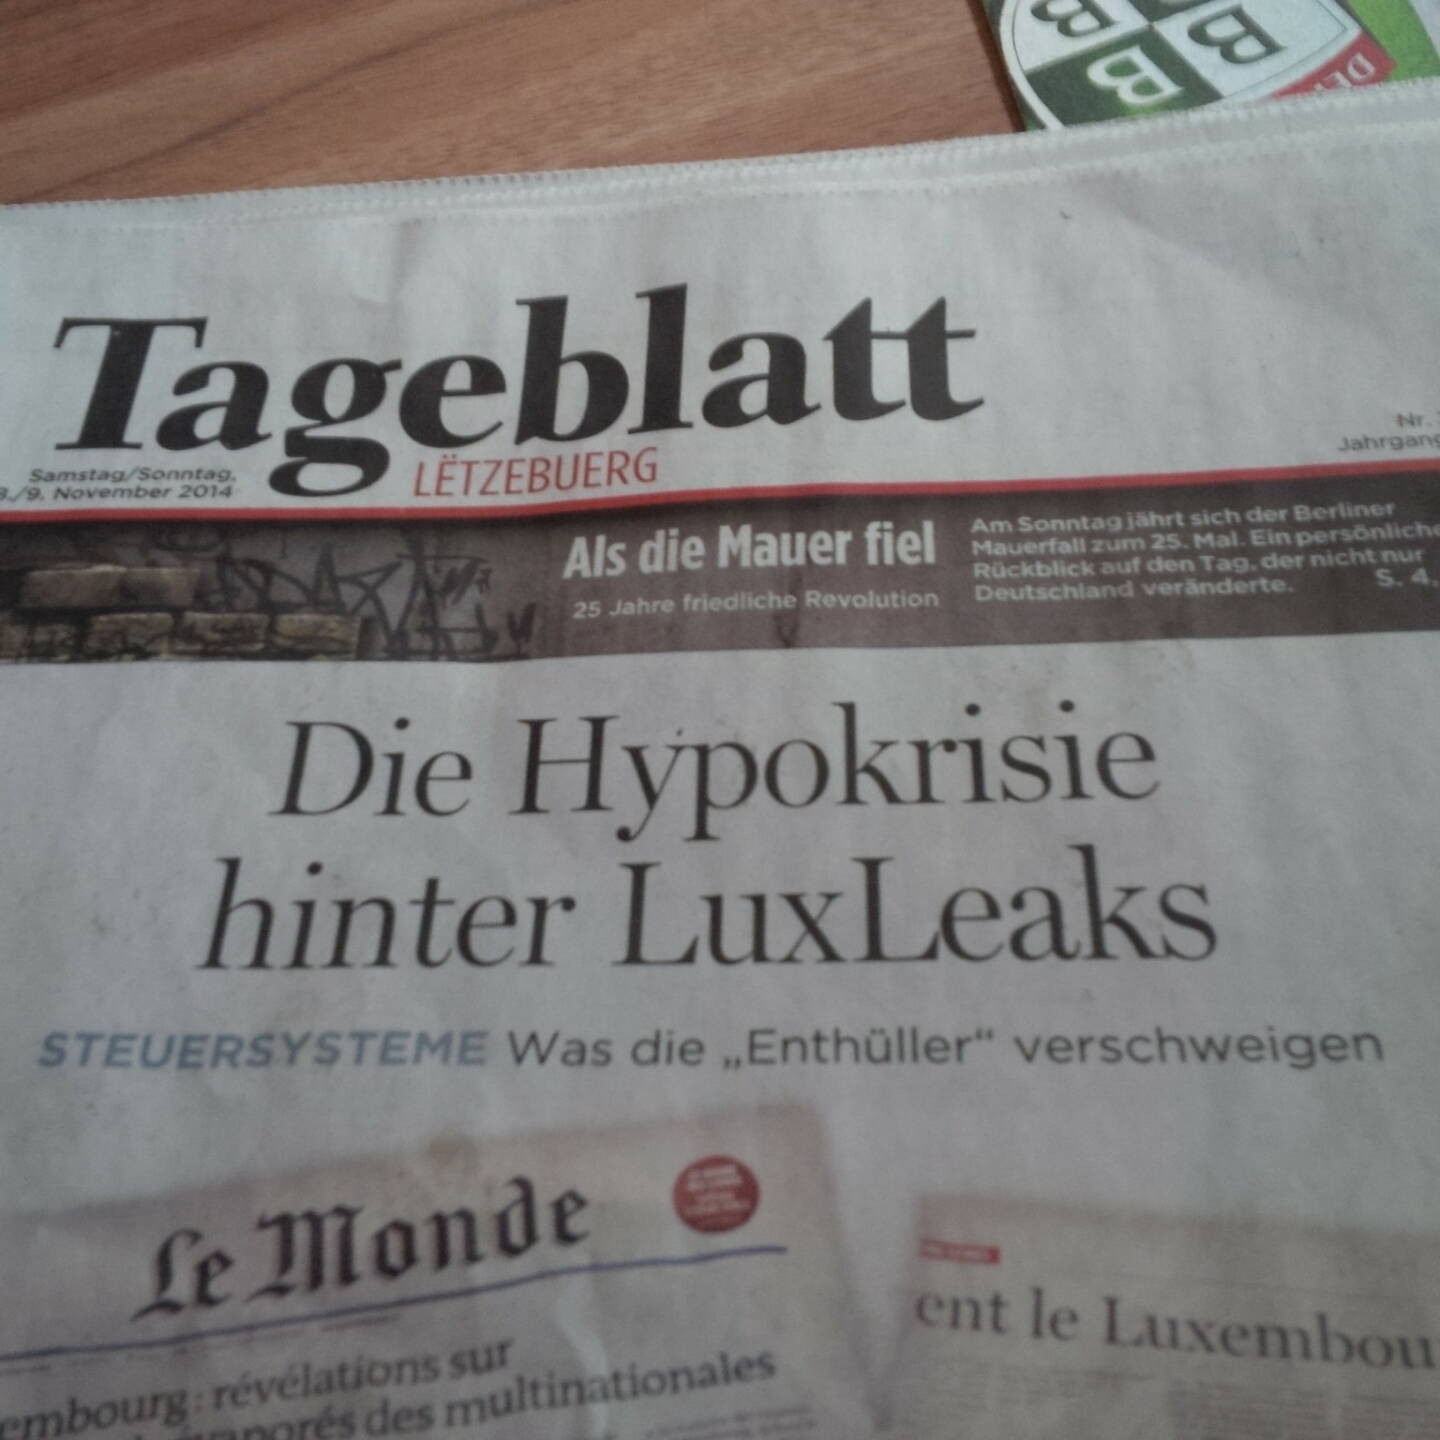 Hypo hinter LuxLeaks (Cover einer Luxemburger Tageszeitung), gesehen und fotografiert von Herbert Gmoser